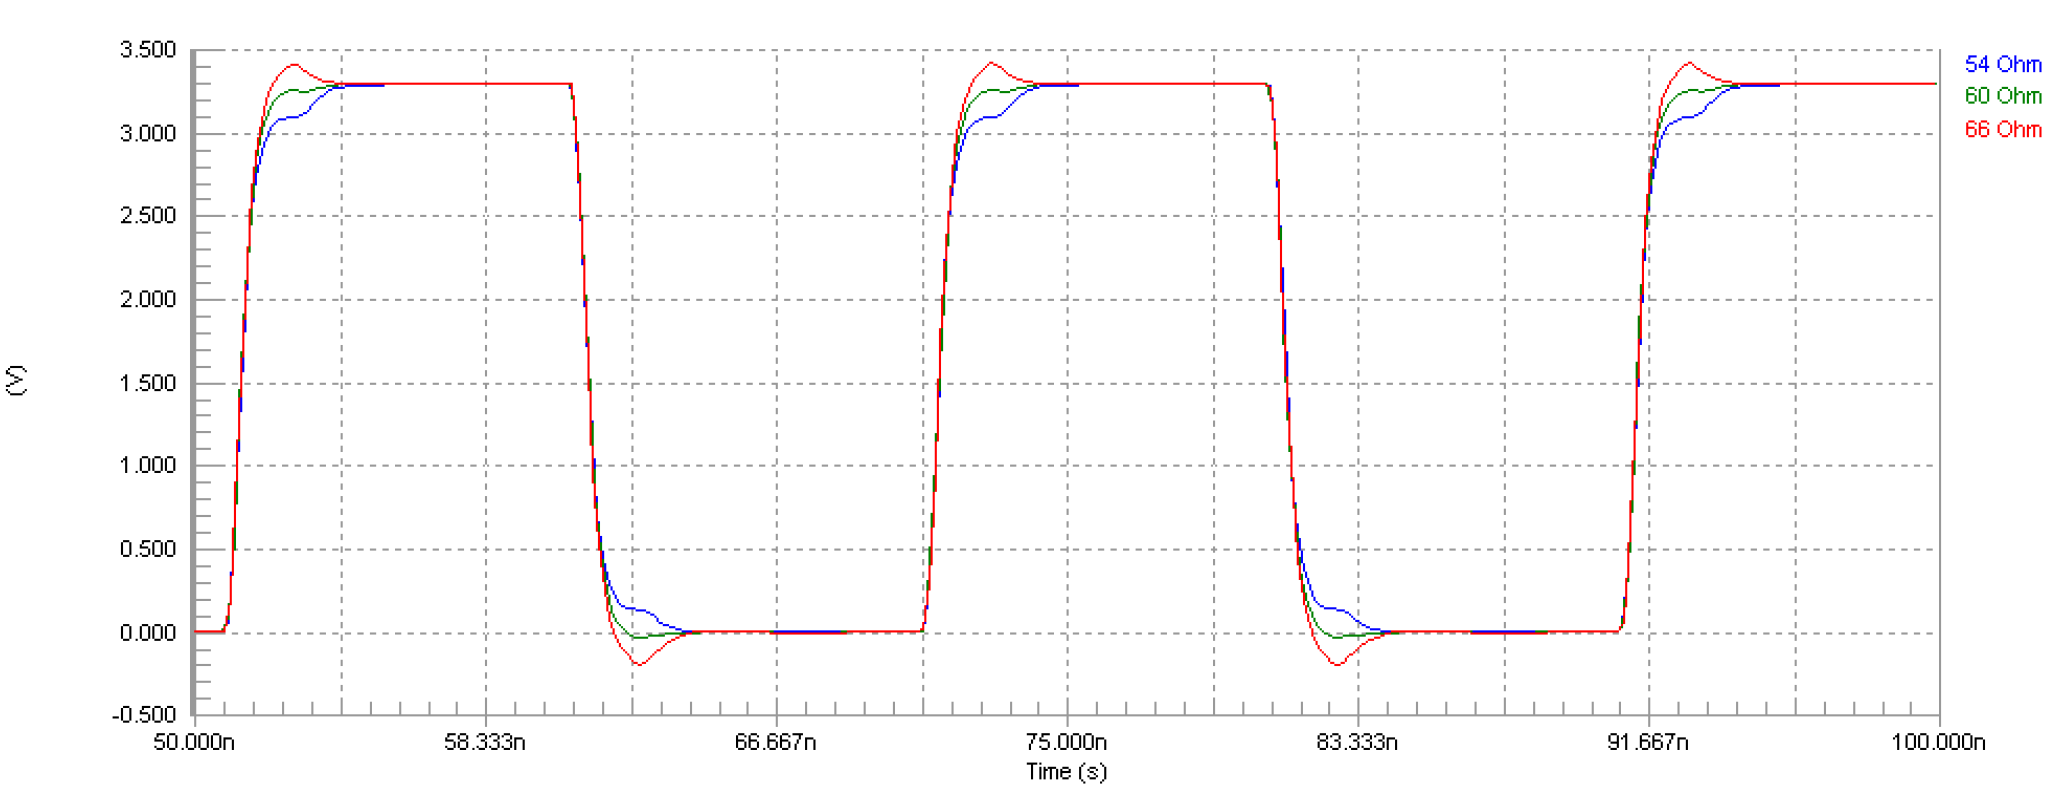 Altium Designer simulation waveform for SiT8208 driving load through 5 in transmission line